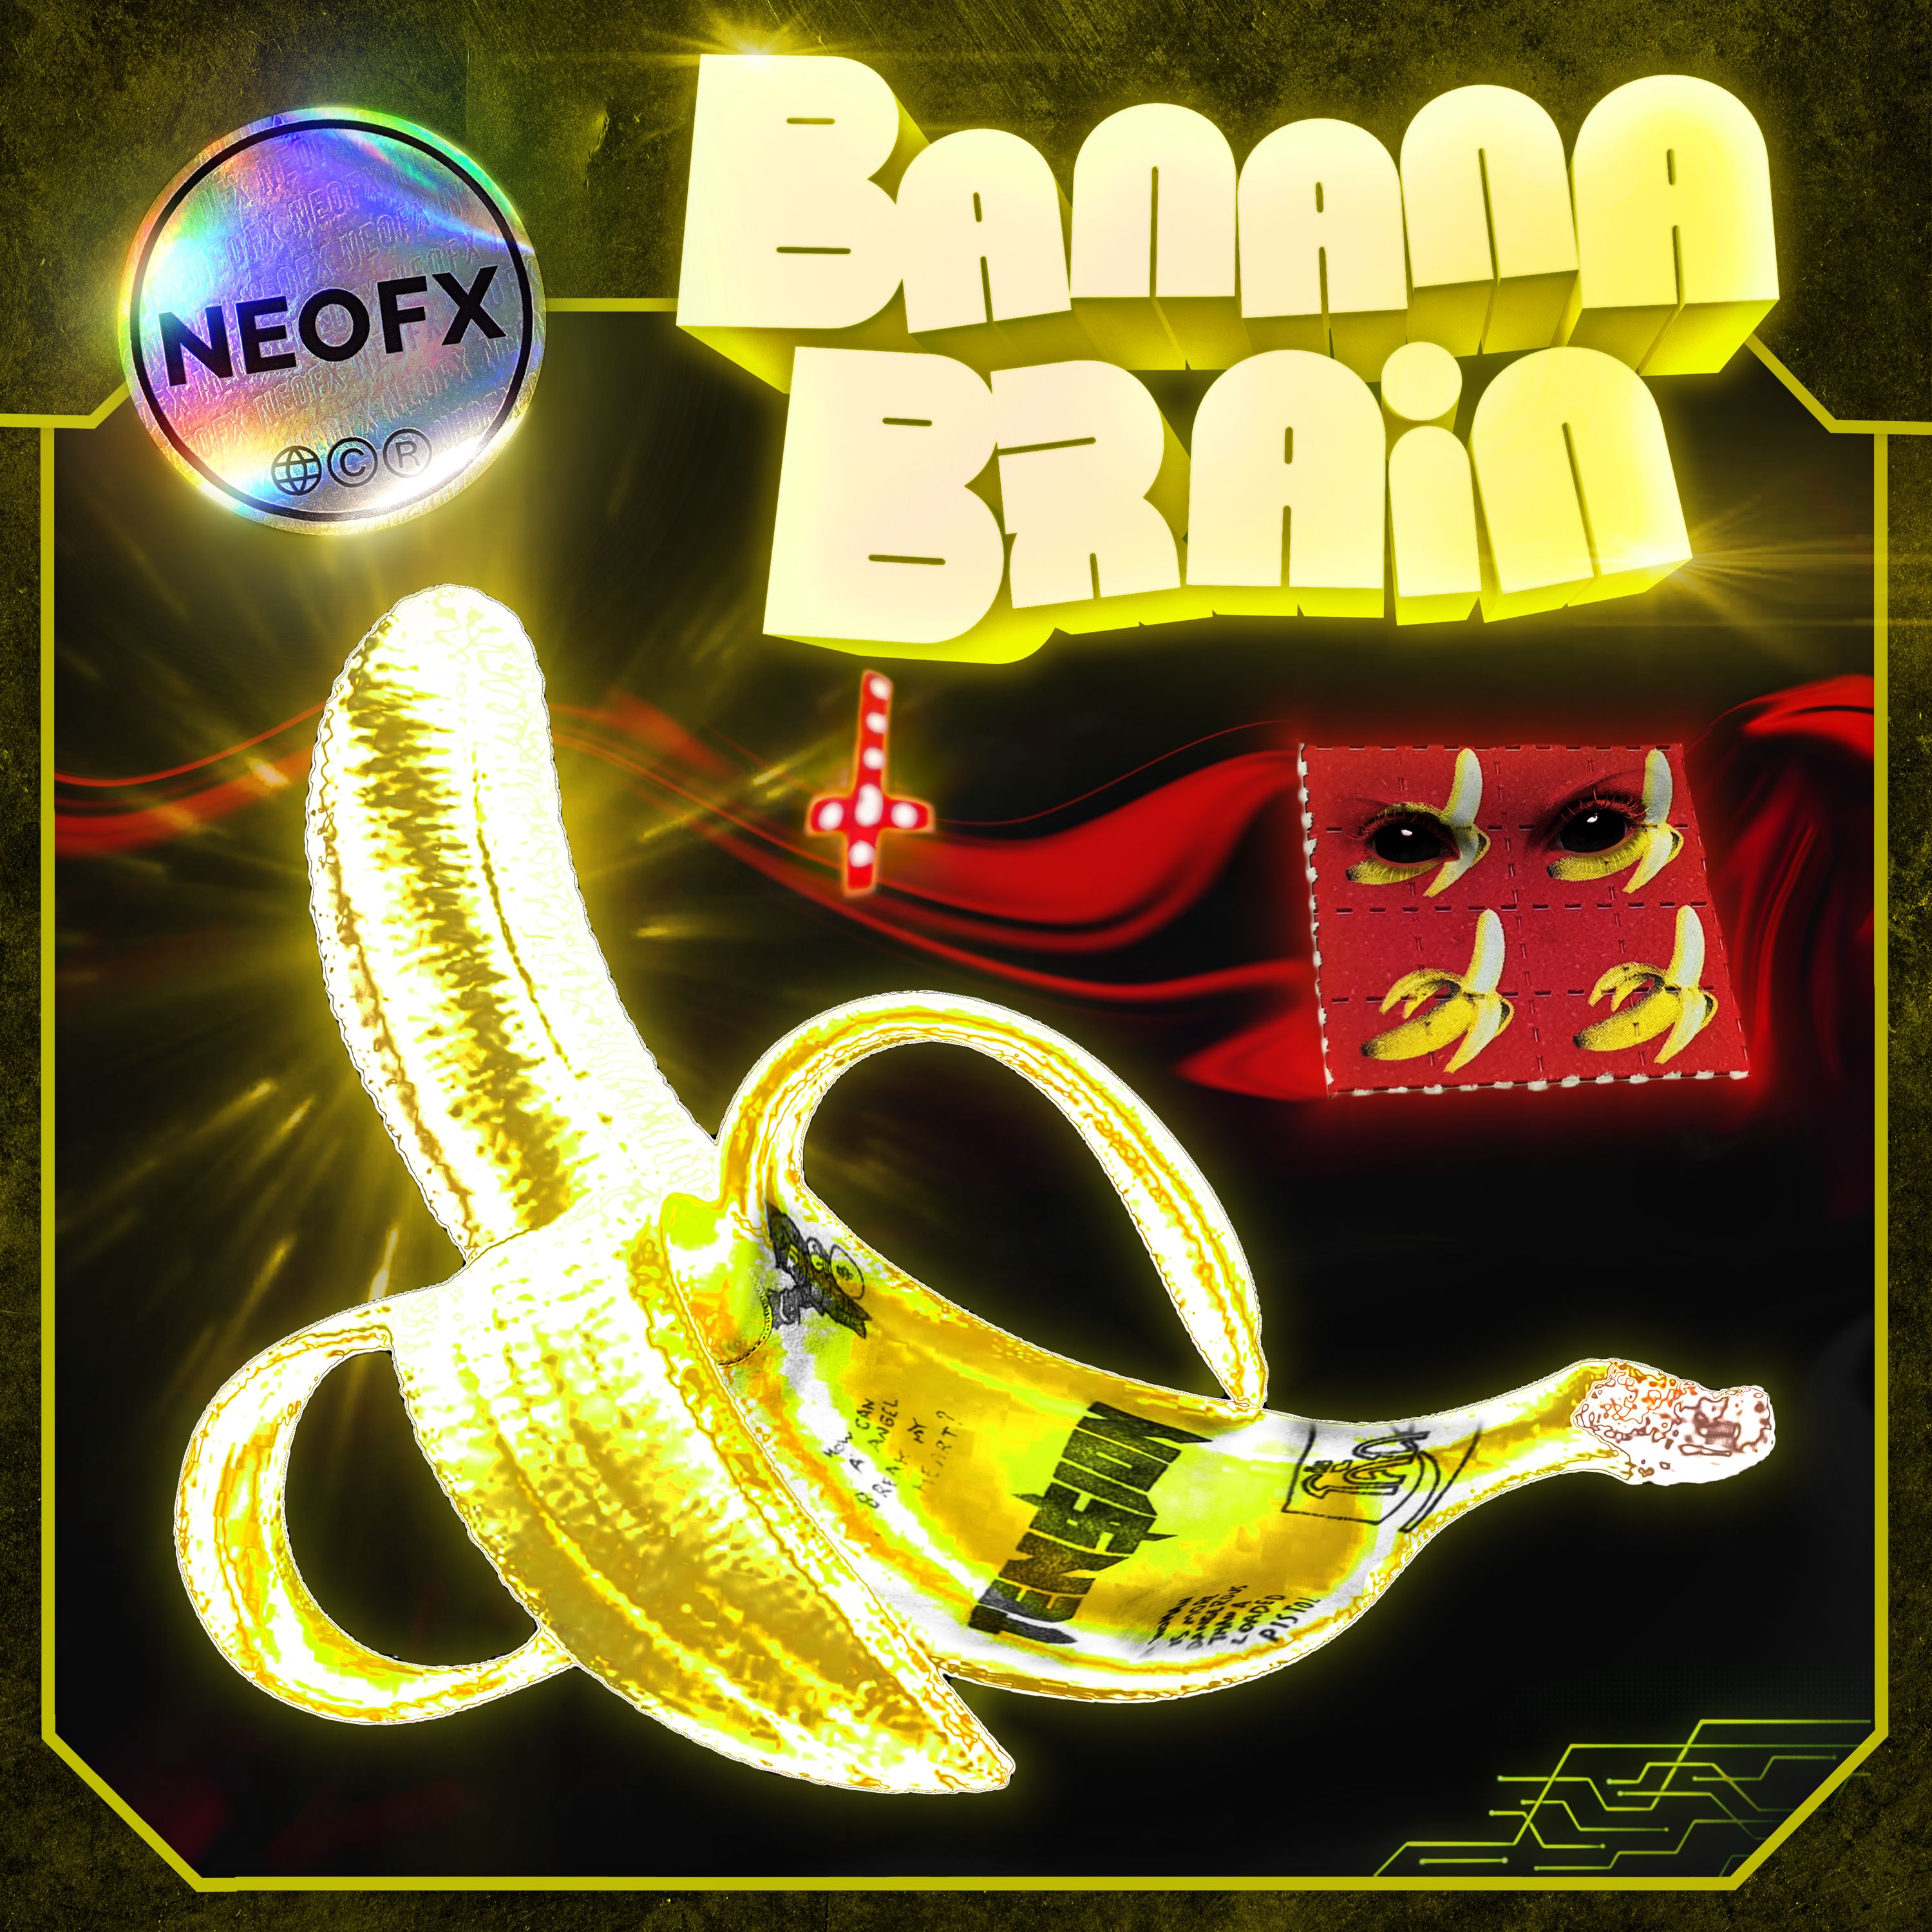 Soo dejiso Banana Brain